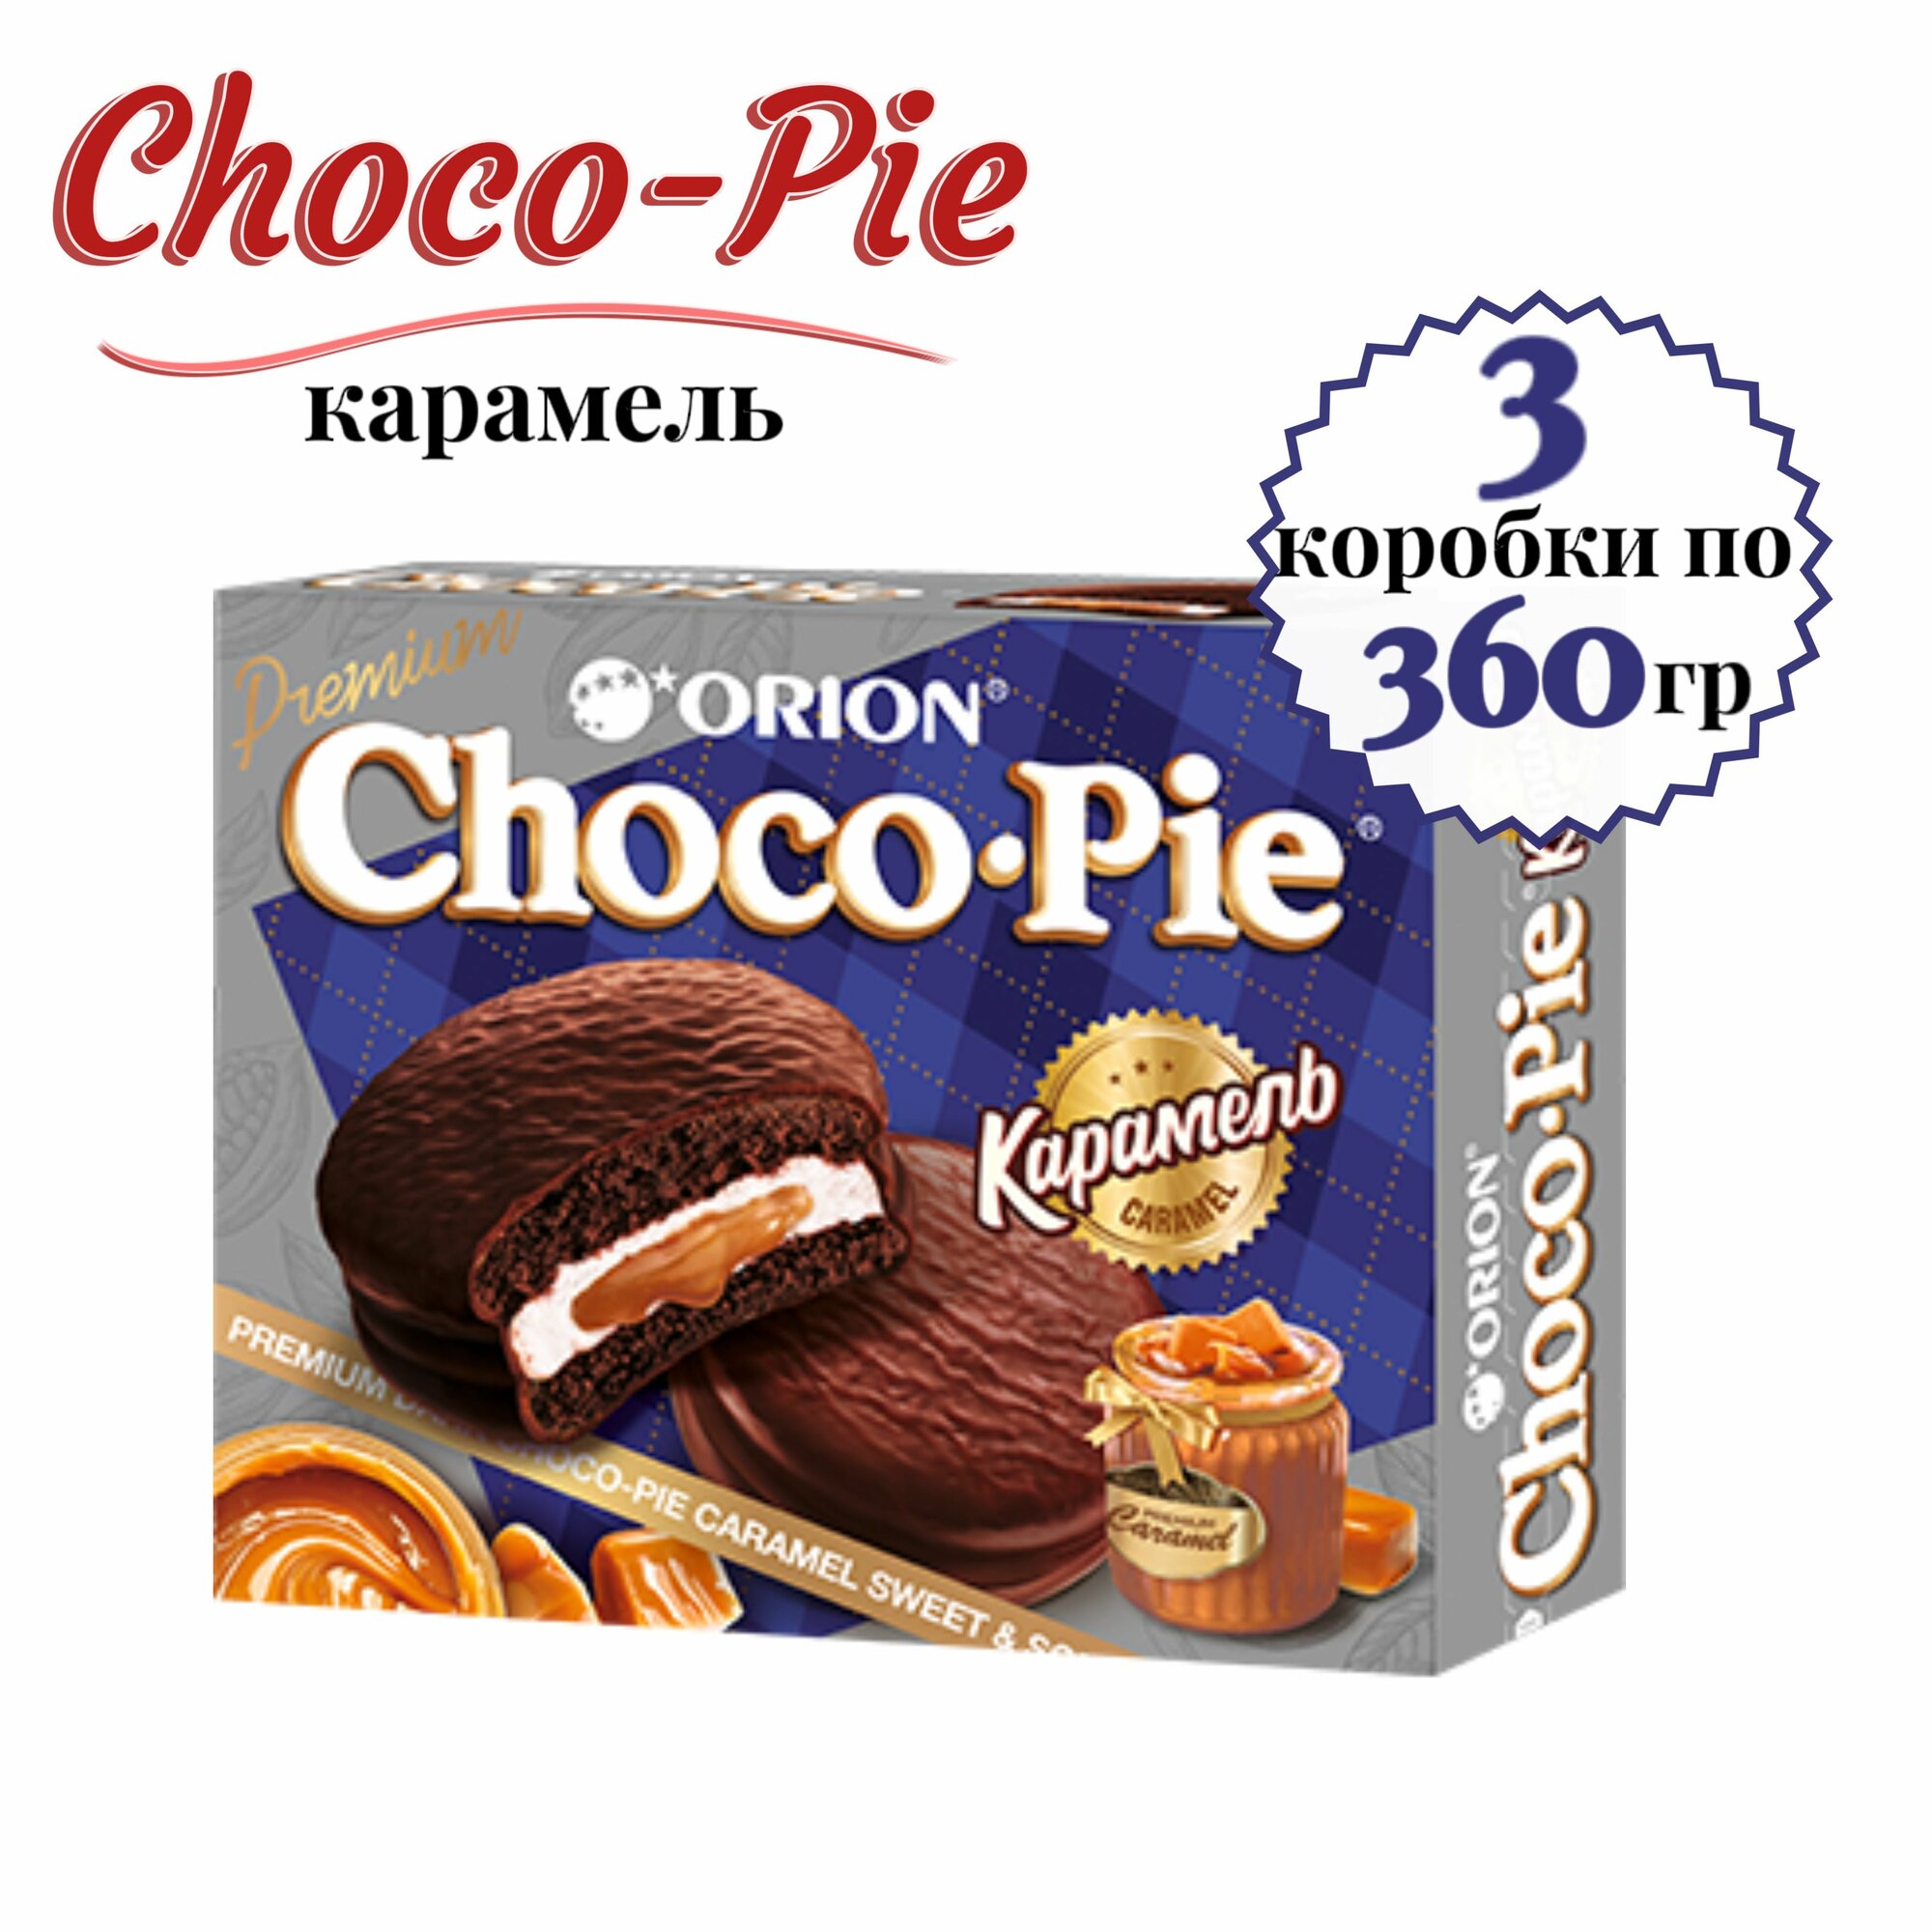 Печенье ORION Choco Pie Карамель, 3 шт. по 360 гр.